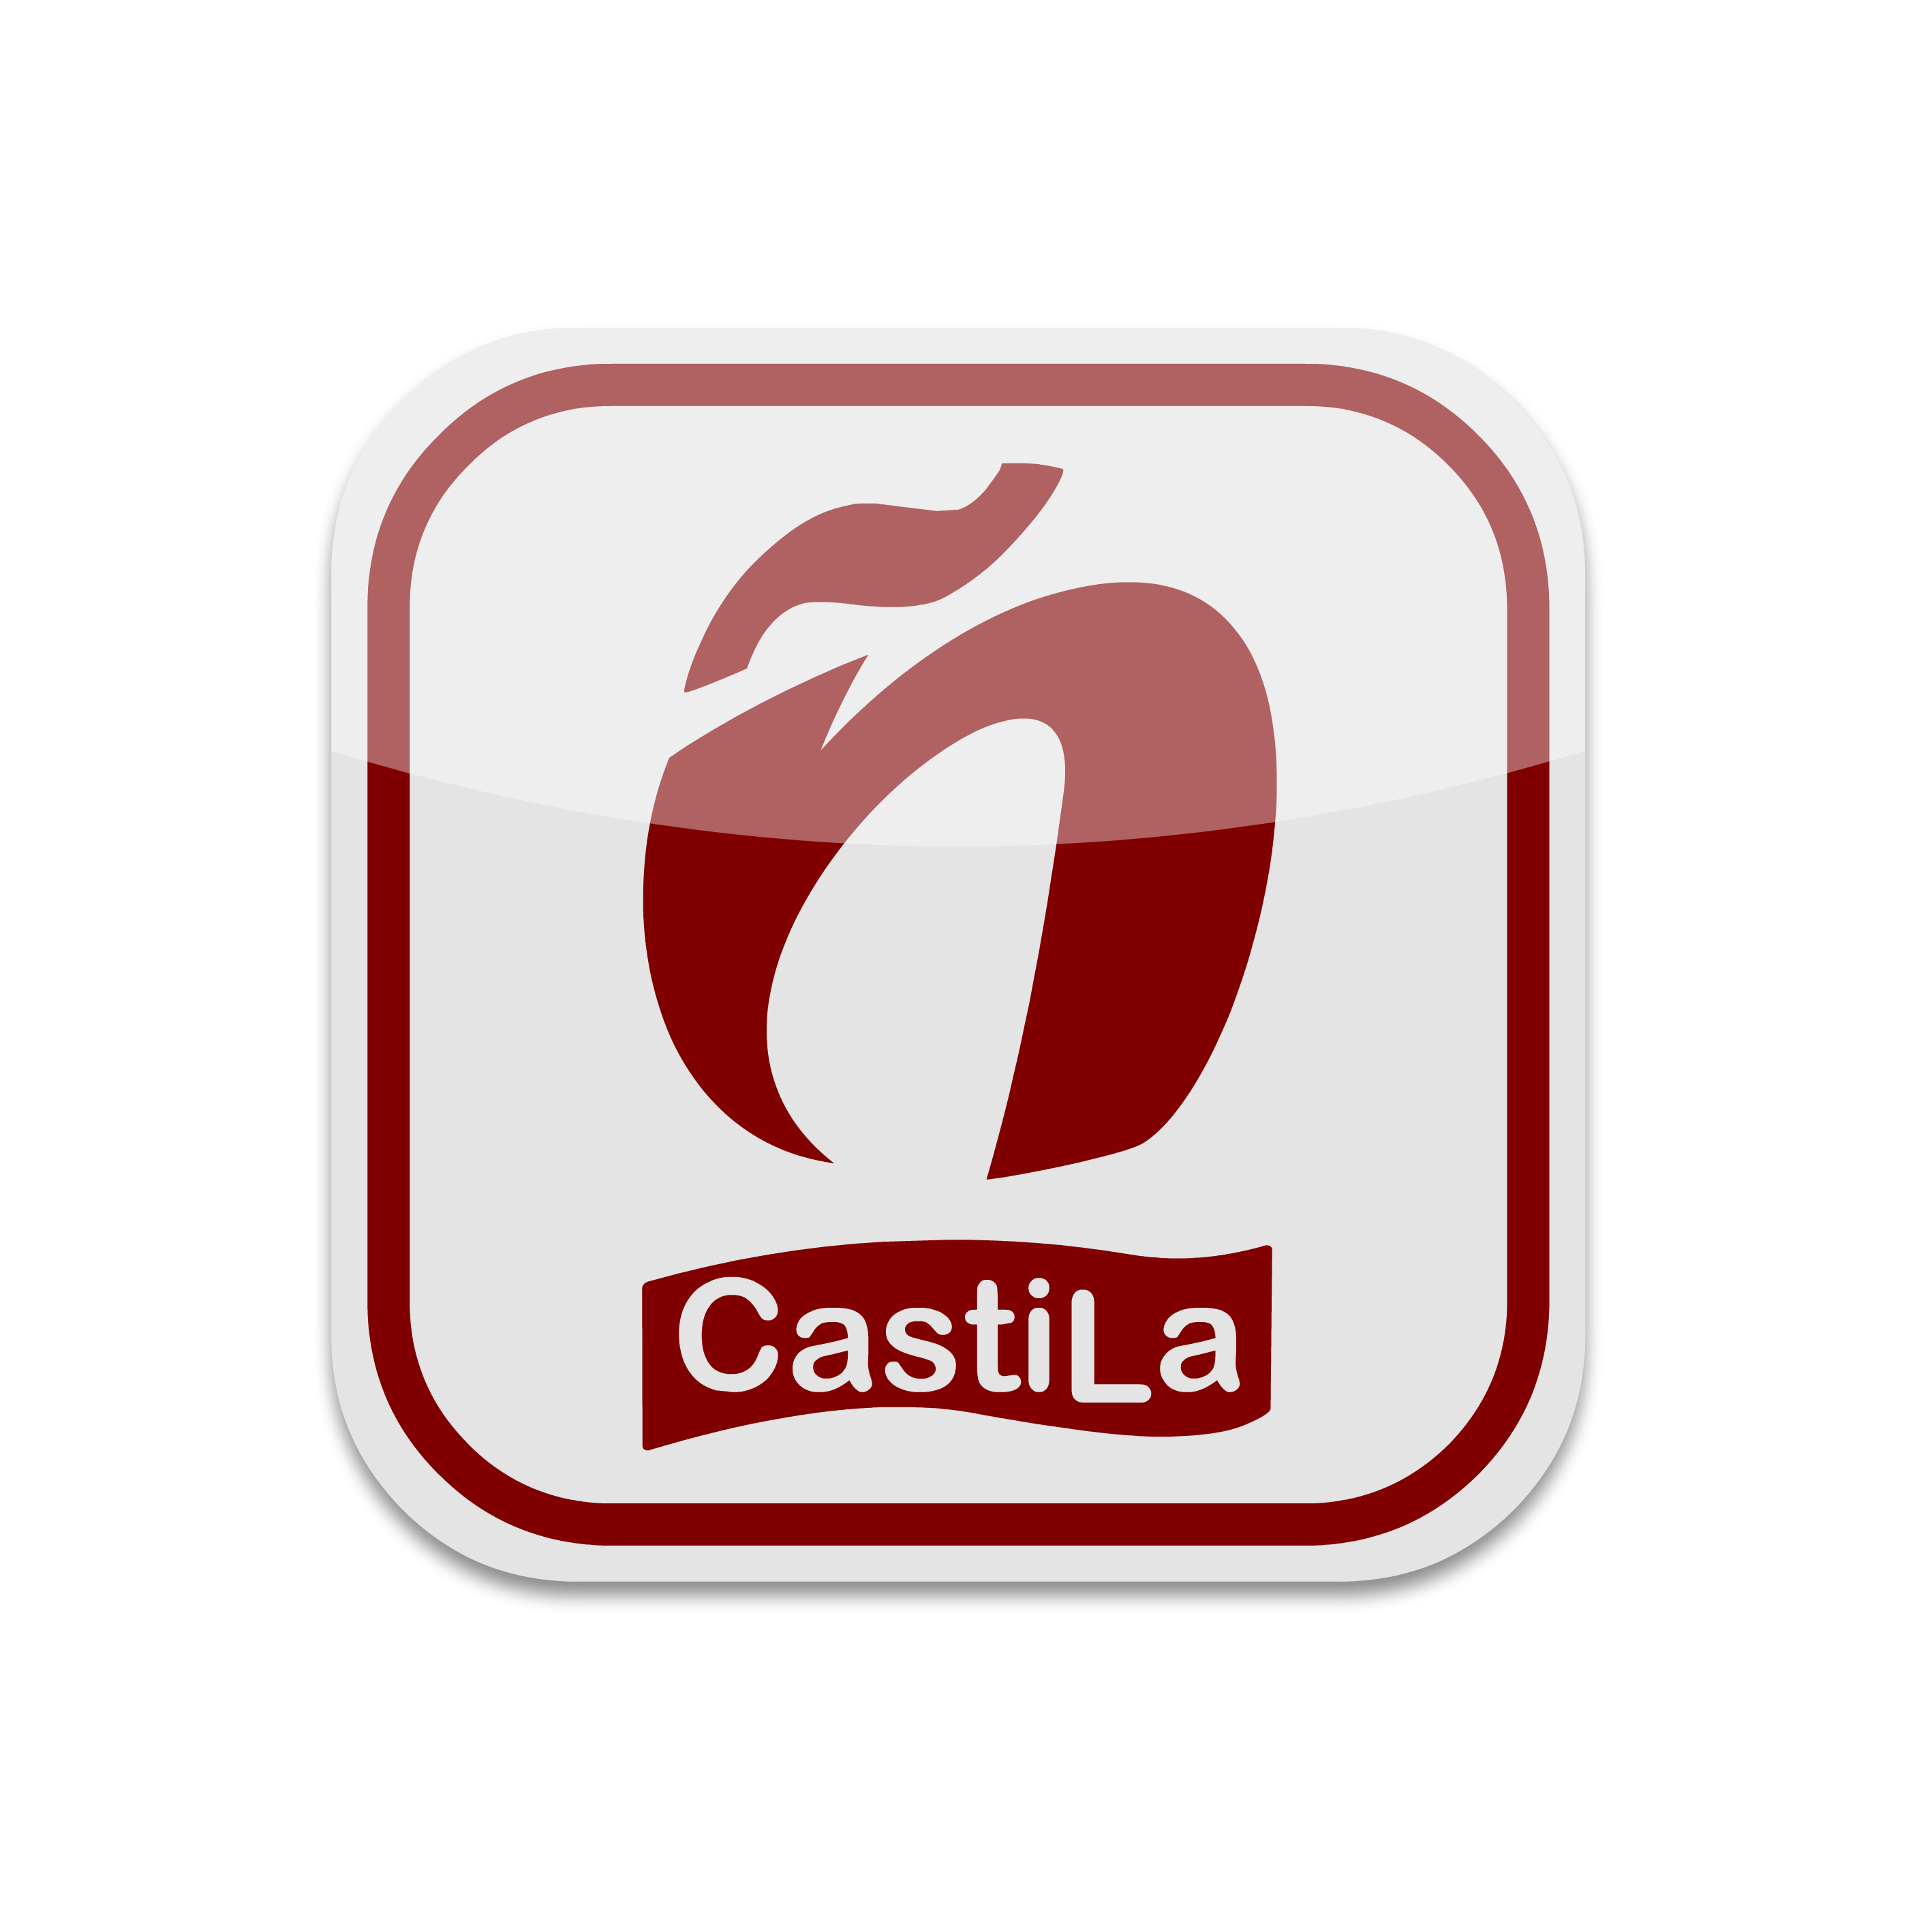 Castila